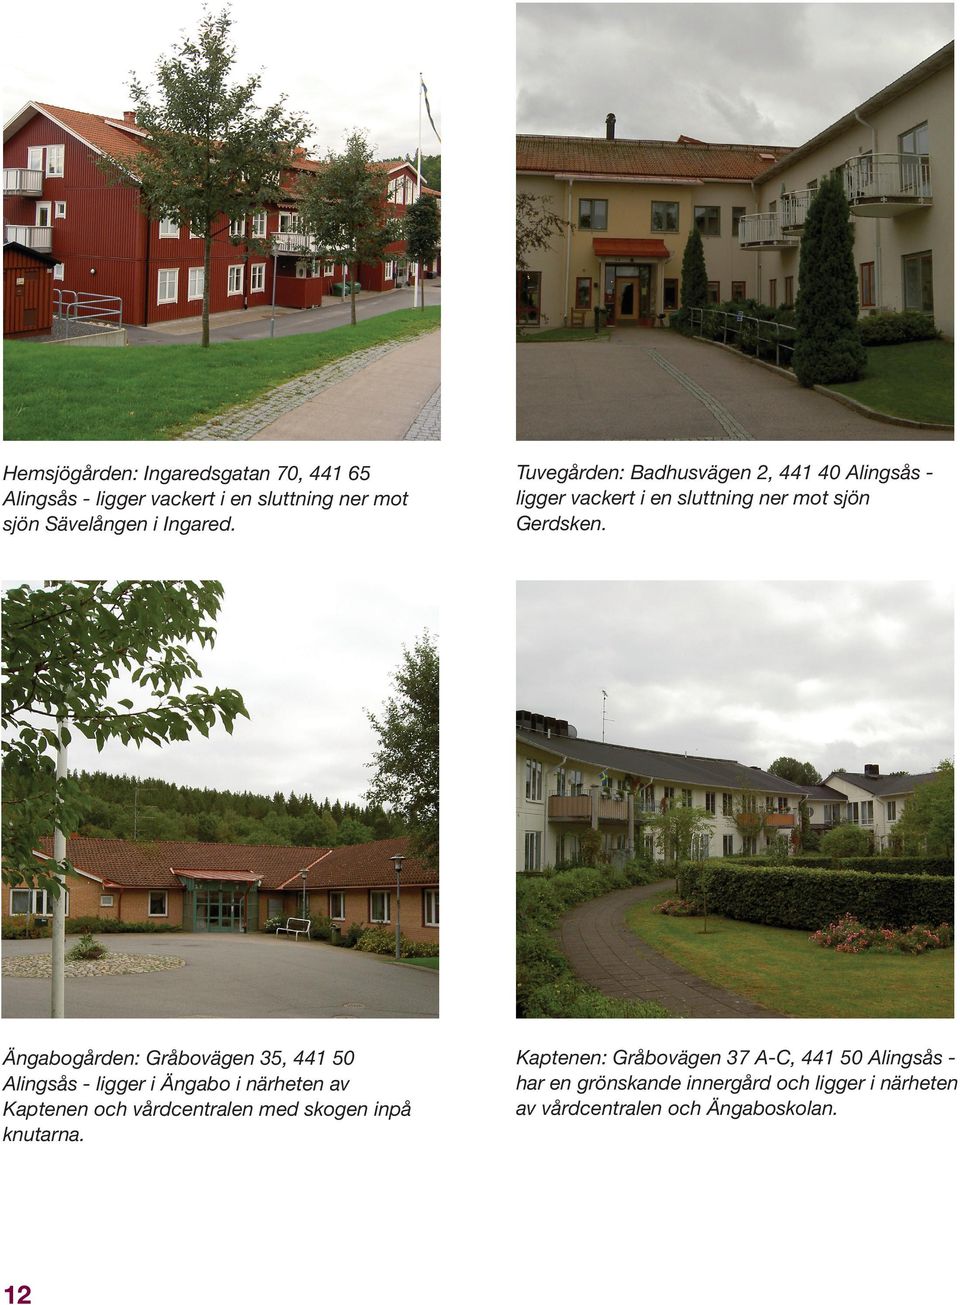 Ängabogården: Gråbovägen 35, 441 50 Alingsås - ligger i Ängabo i närheten av Kaptenen och vårdcentralen med skogen